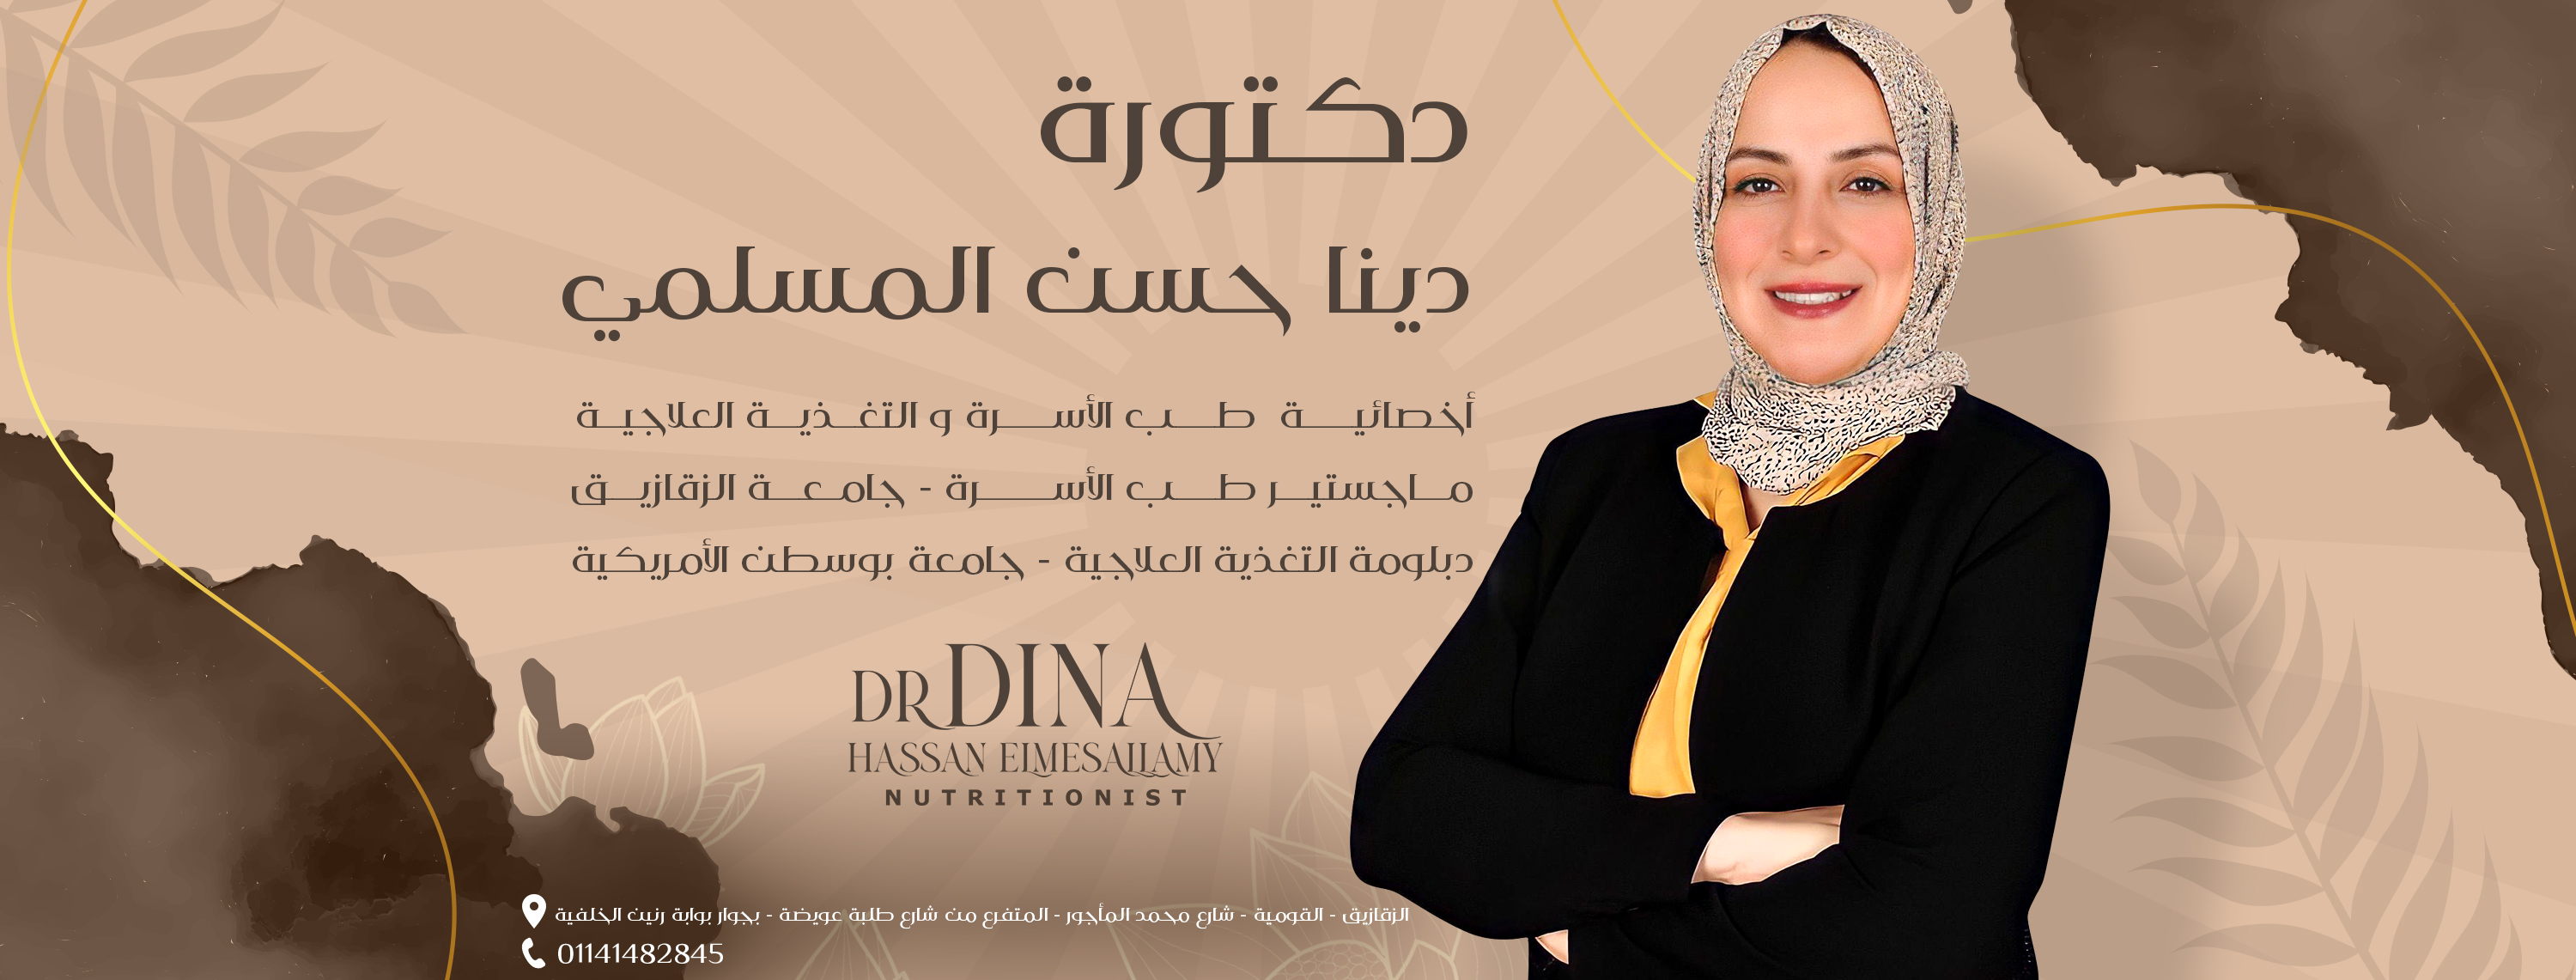 غلاف دكتورة دينا حسن المسلمي اخصائية طب الاسرة والتغذية العلاجية